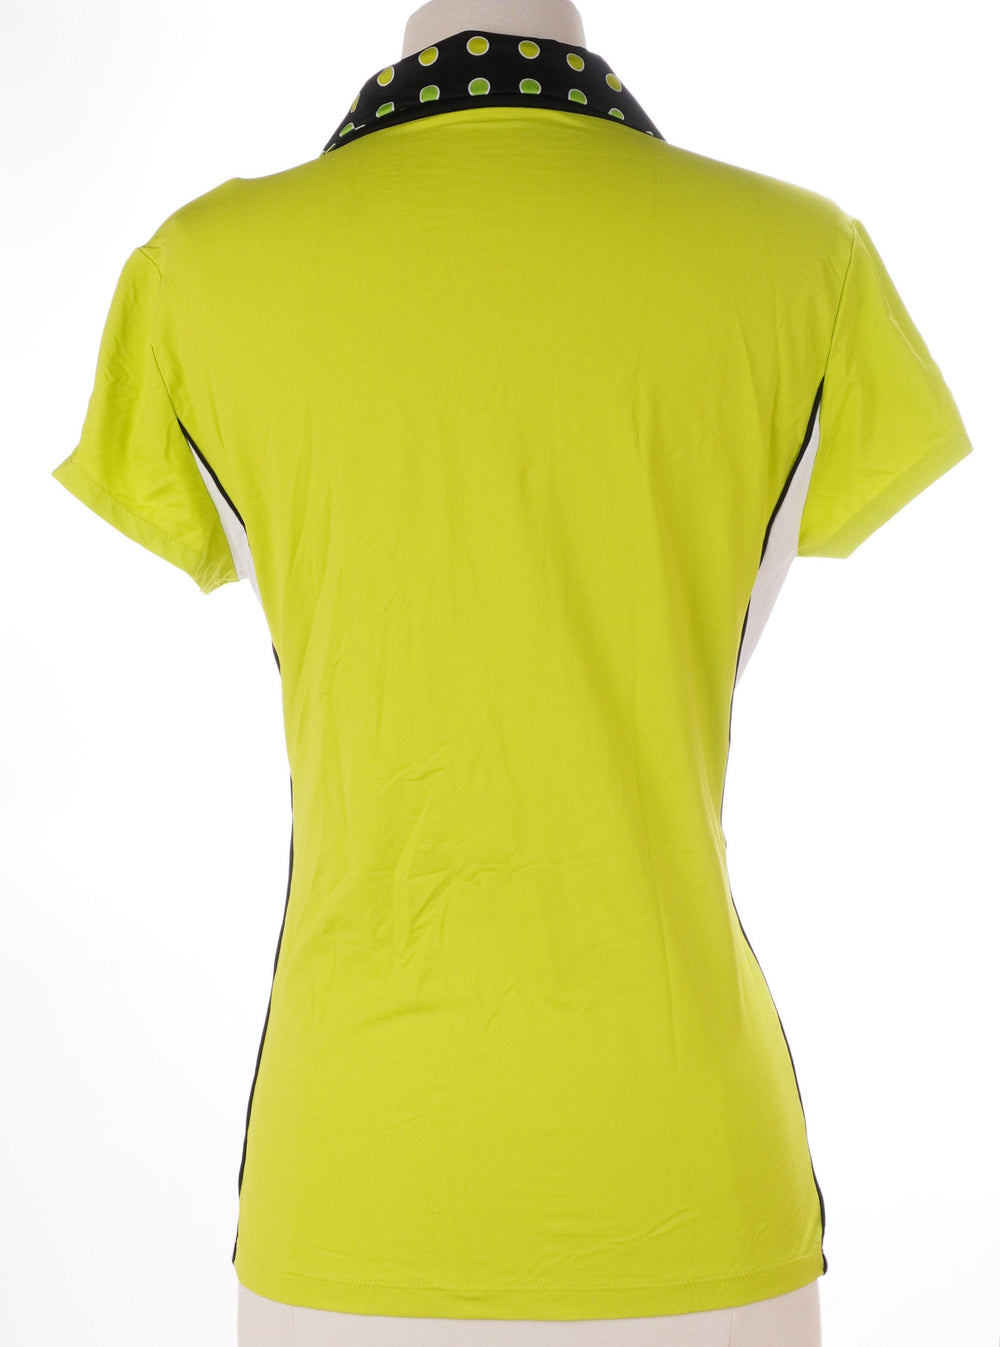 Kinona Green / Small / Consigned Kinona Short Sleeve Top - Lime - Size Small